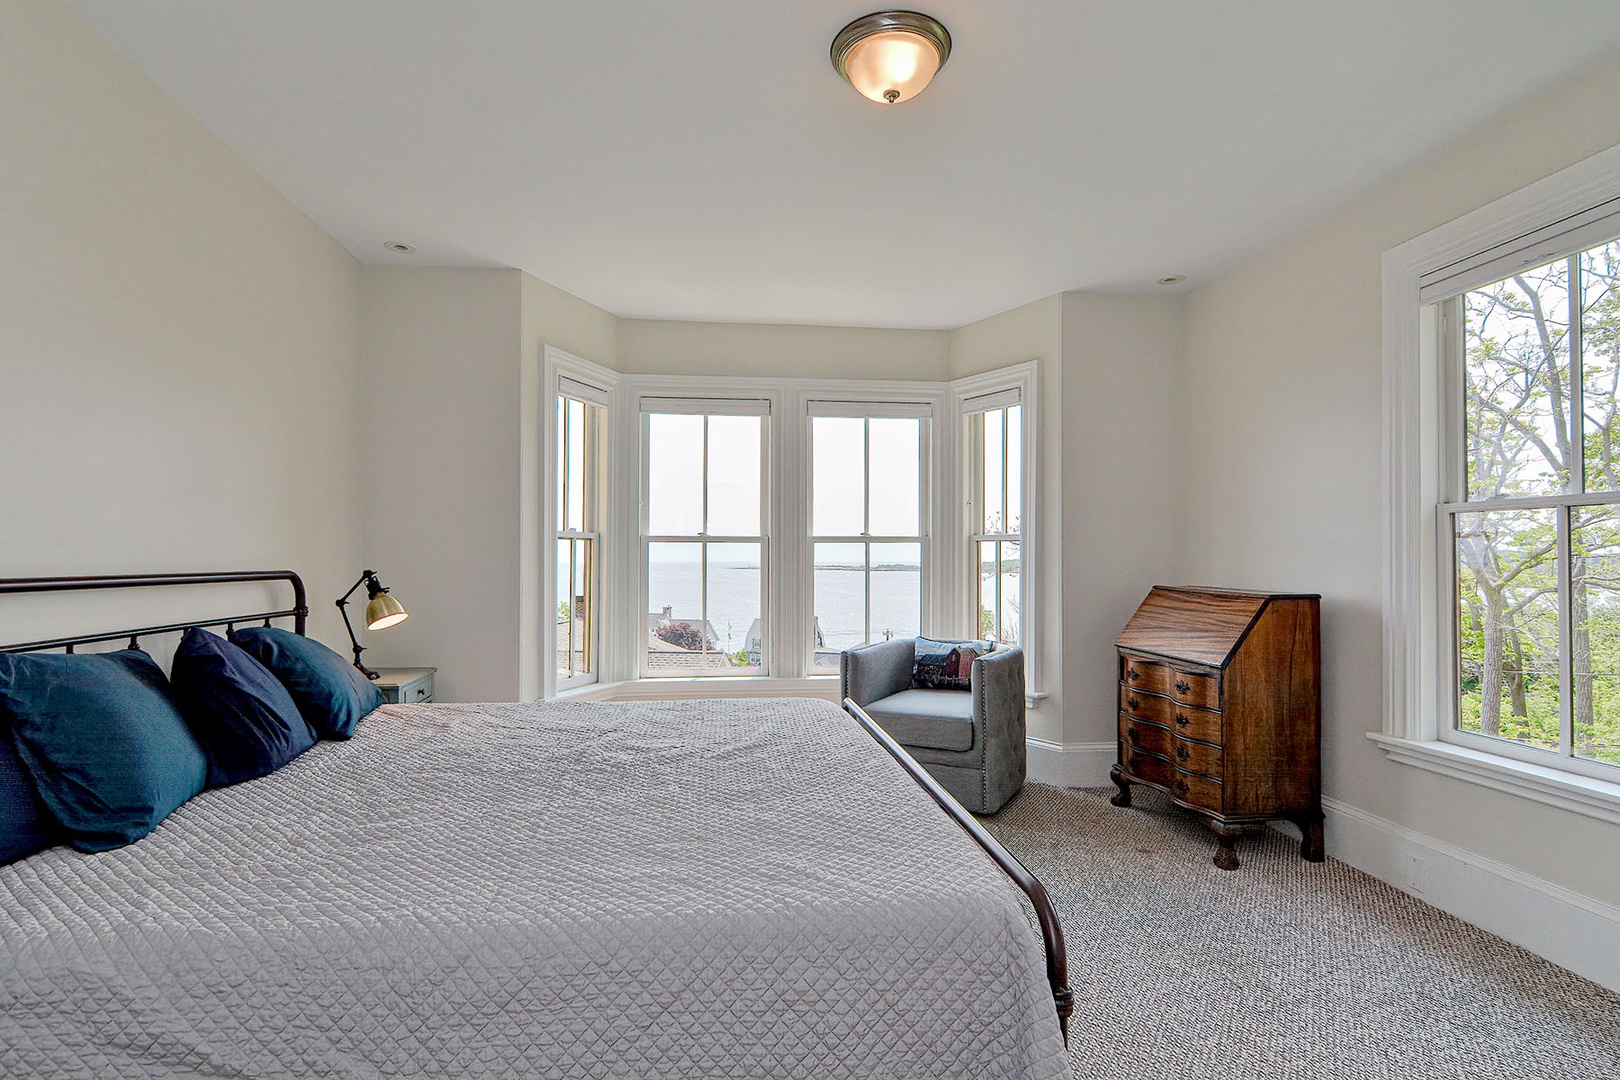 King bedroom with ocean views